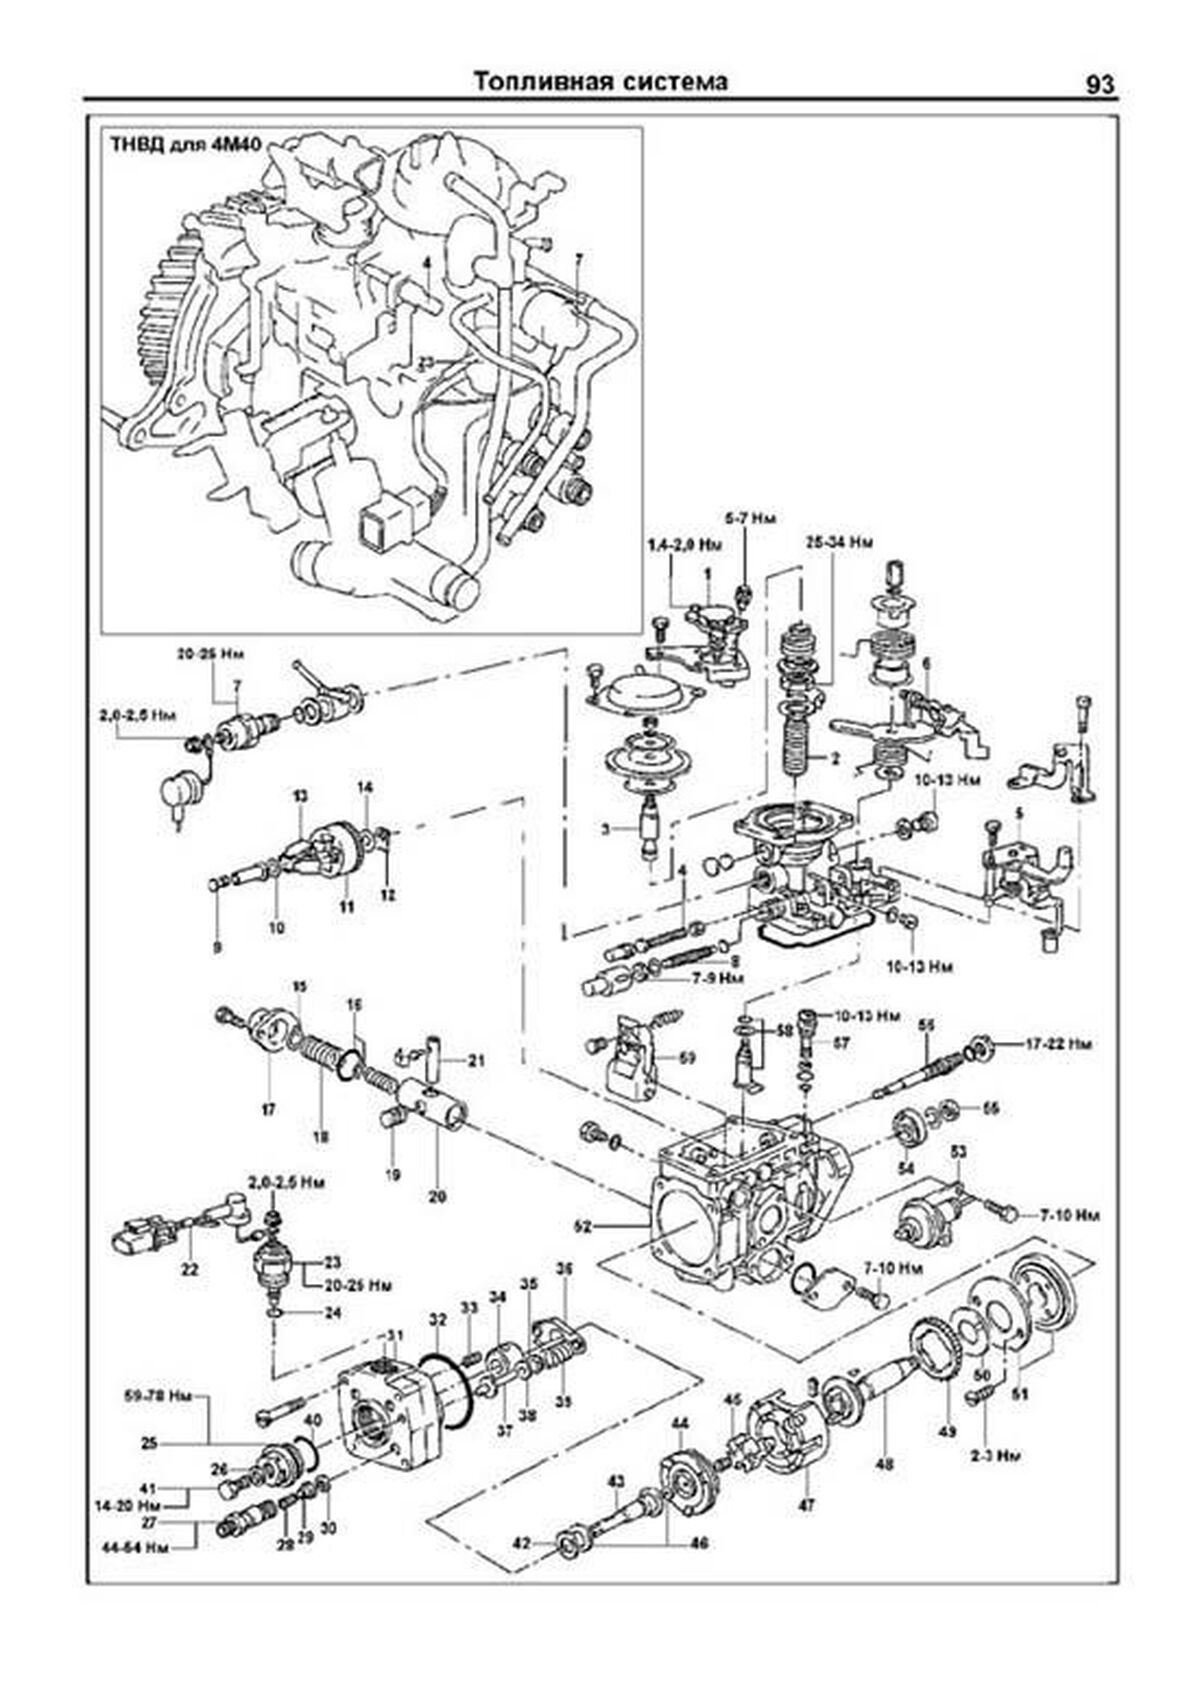 Книга: Дизельные двигатели MITSUBISHI 4M40 / 4D56 | Легион-Aвтодата